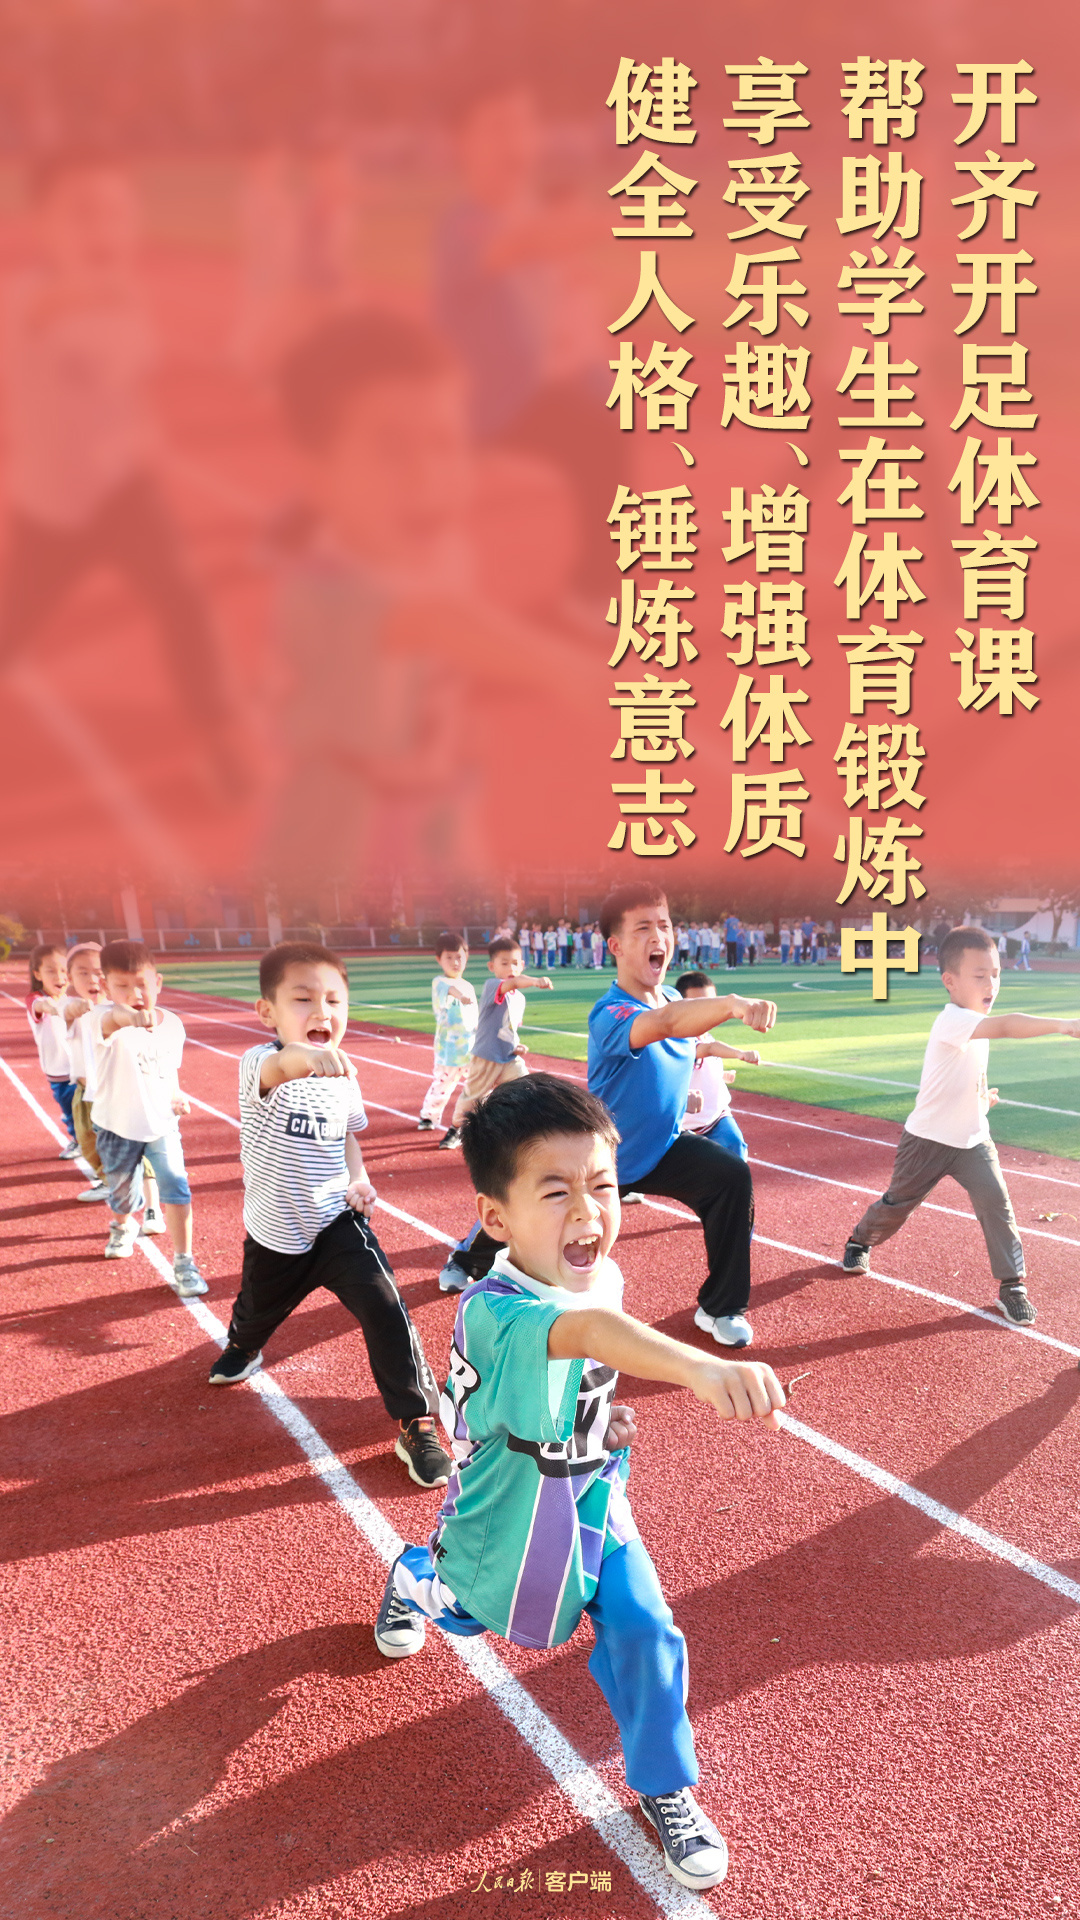 体育强则中国强！习近平谈推进体育强国建设